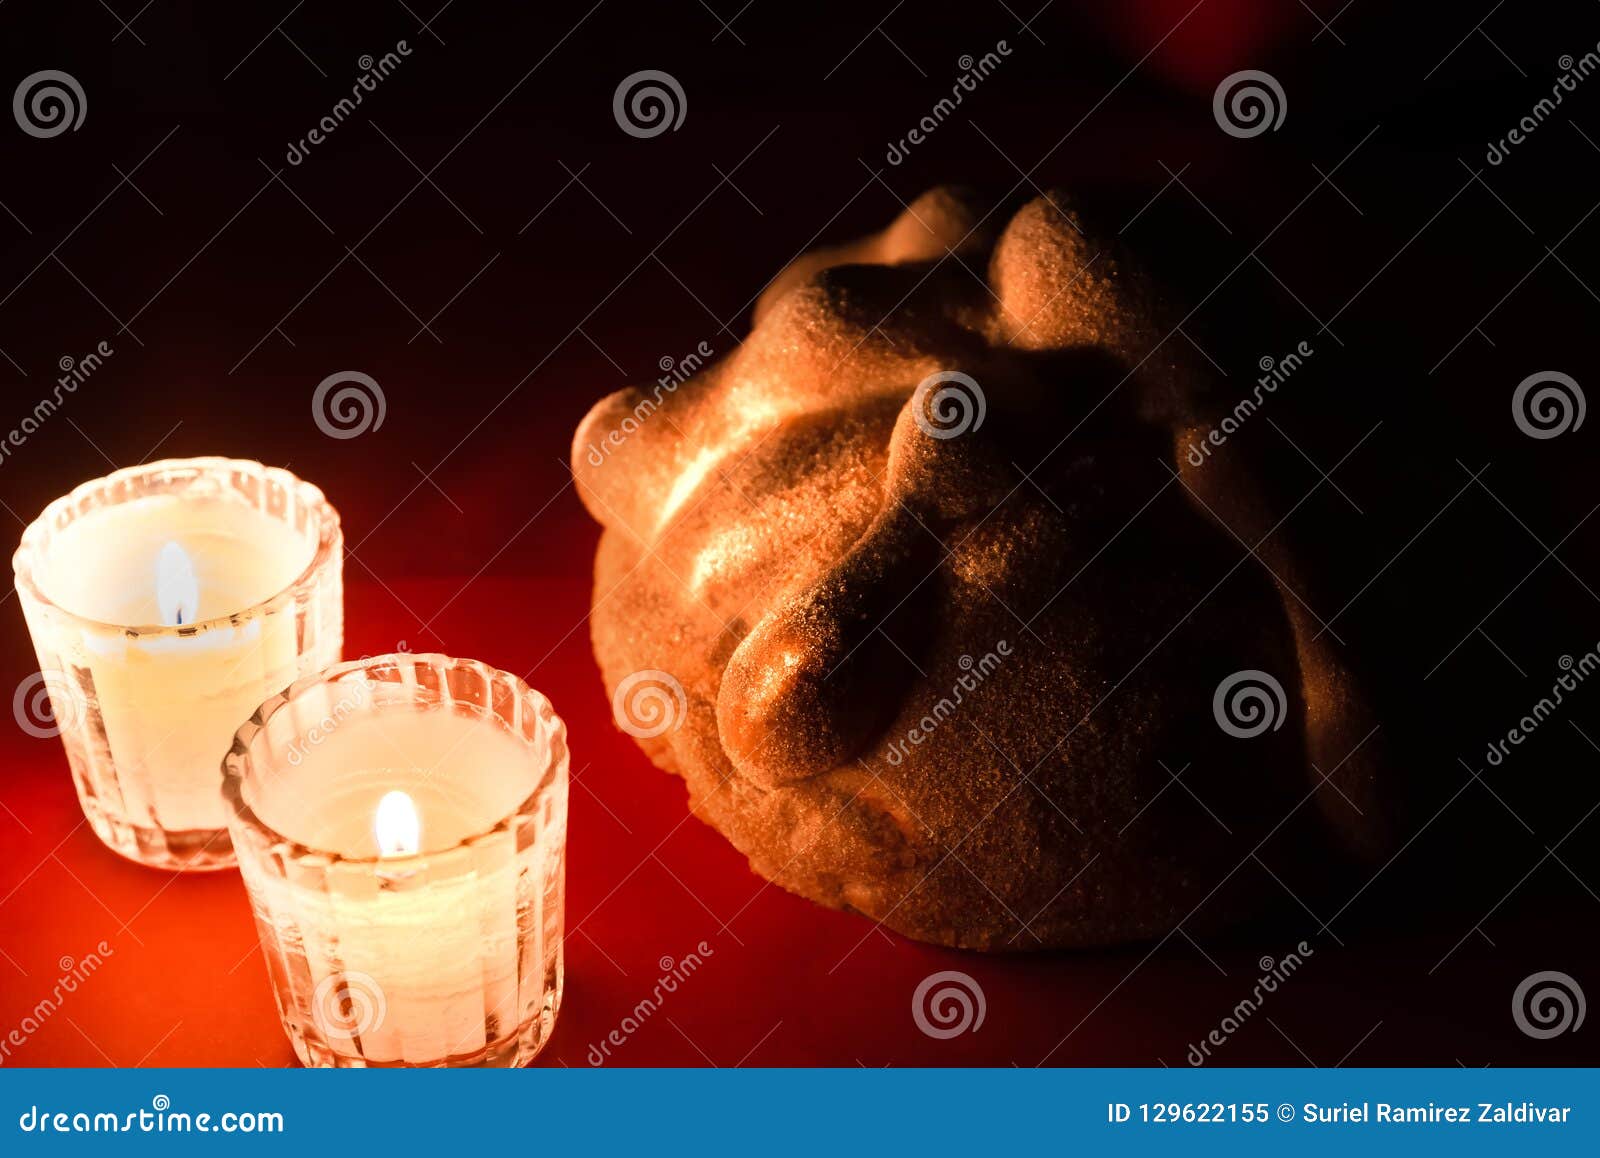 bread and candles - pan de muerto - ofrenda dia de muertos